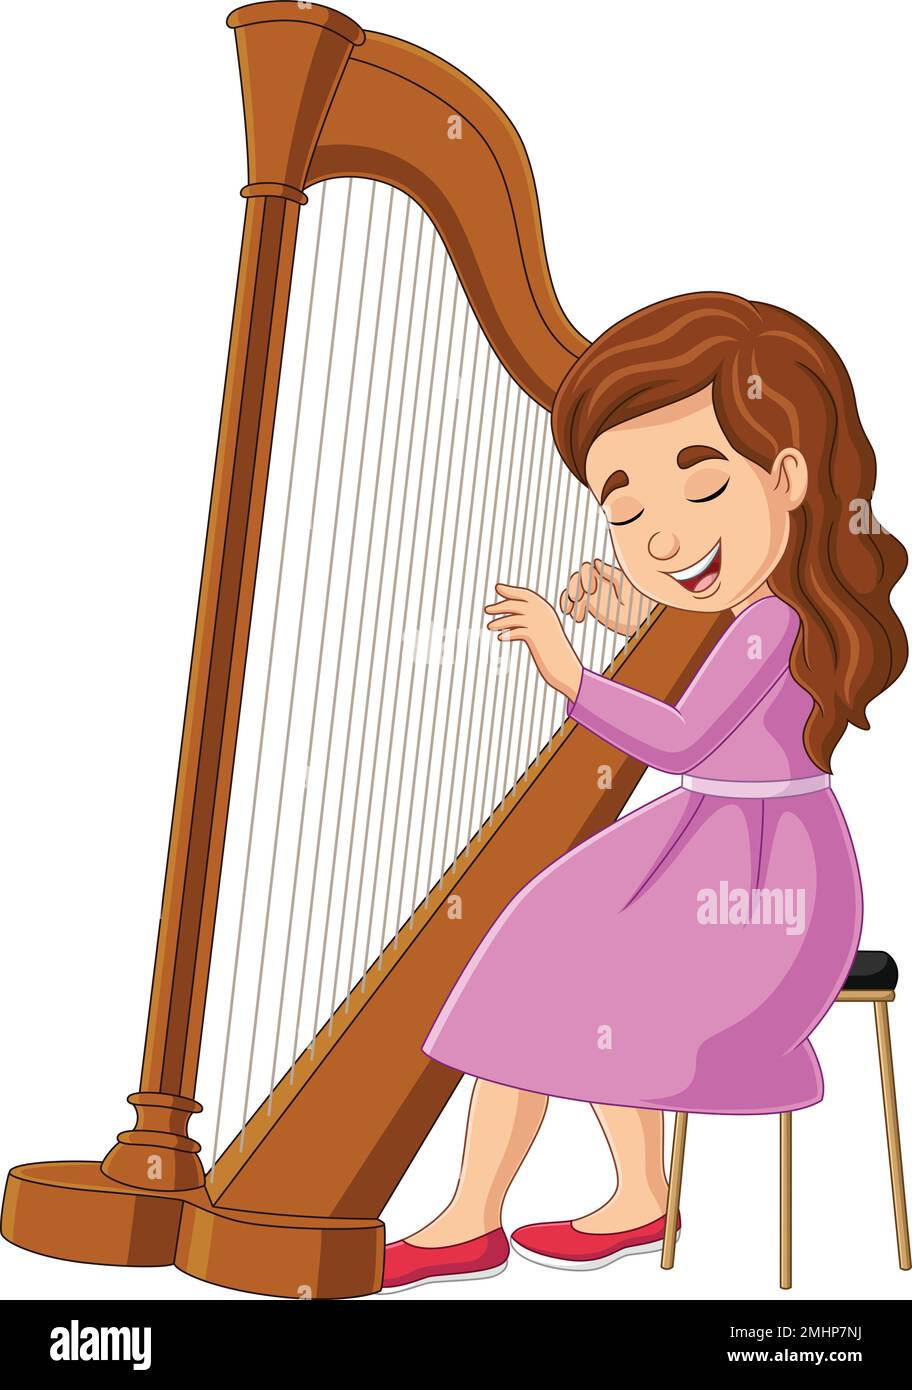 Bande dessinée petite fille jouant de la harpe Illustration de Vecteur